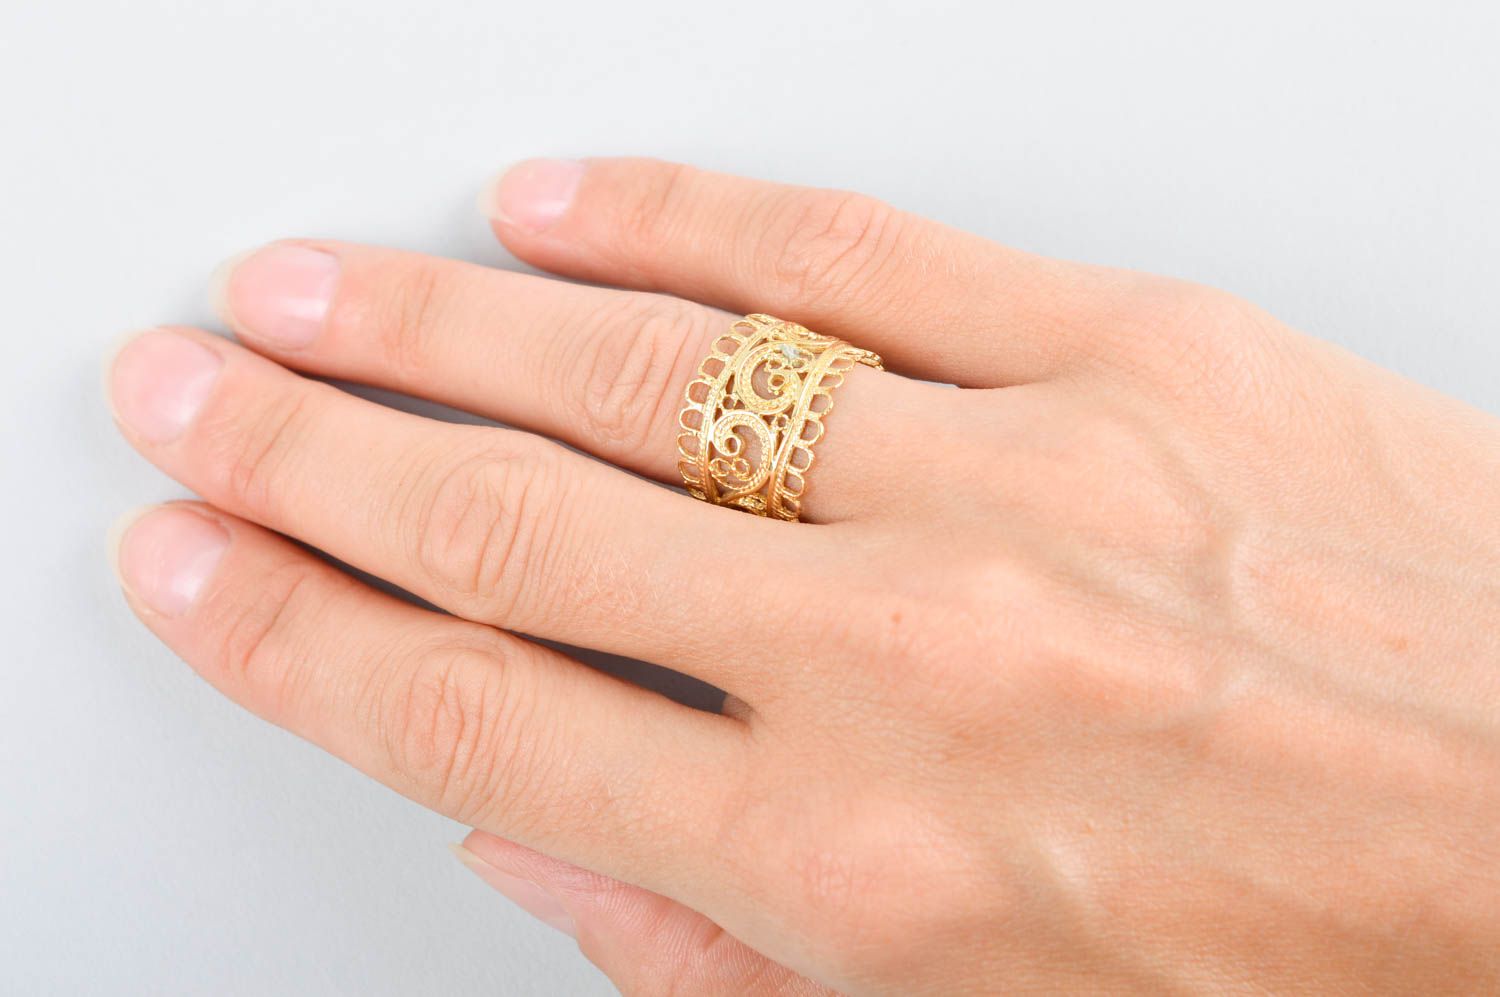 Кольцо ручной работы необычное украшение из латуни оригинальное модное кольцо  фото 5